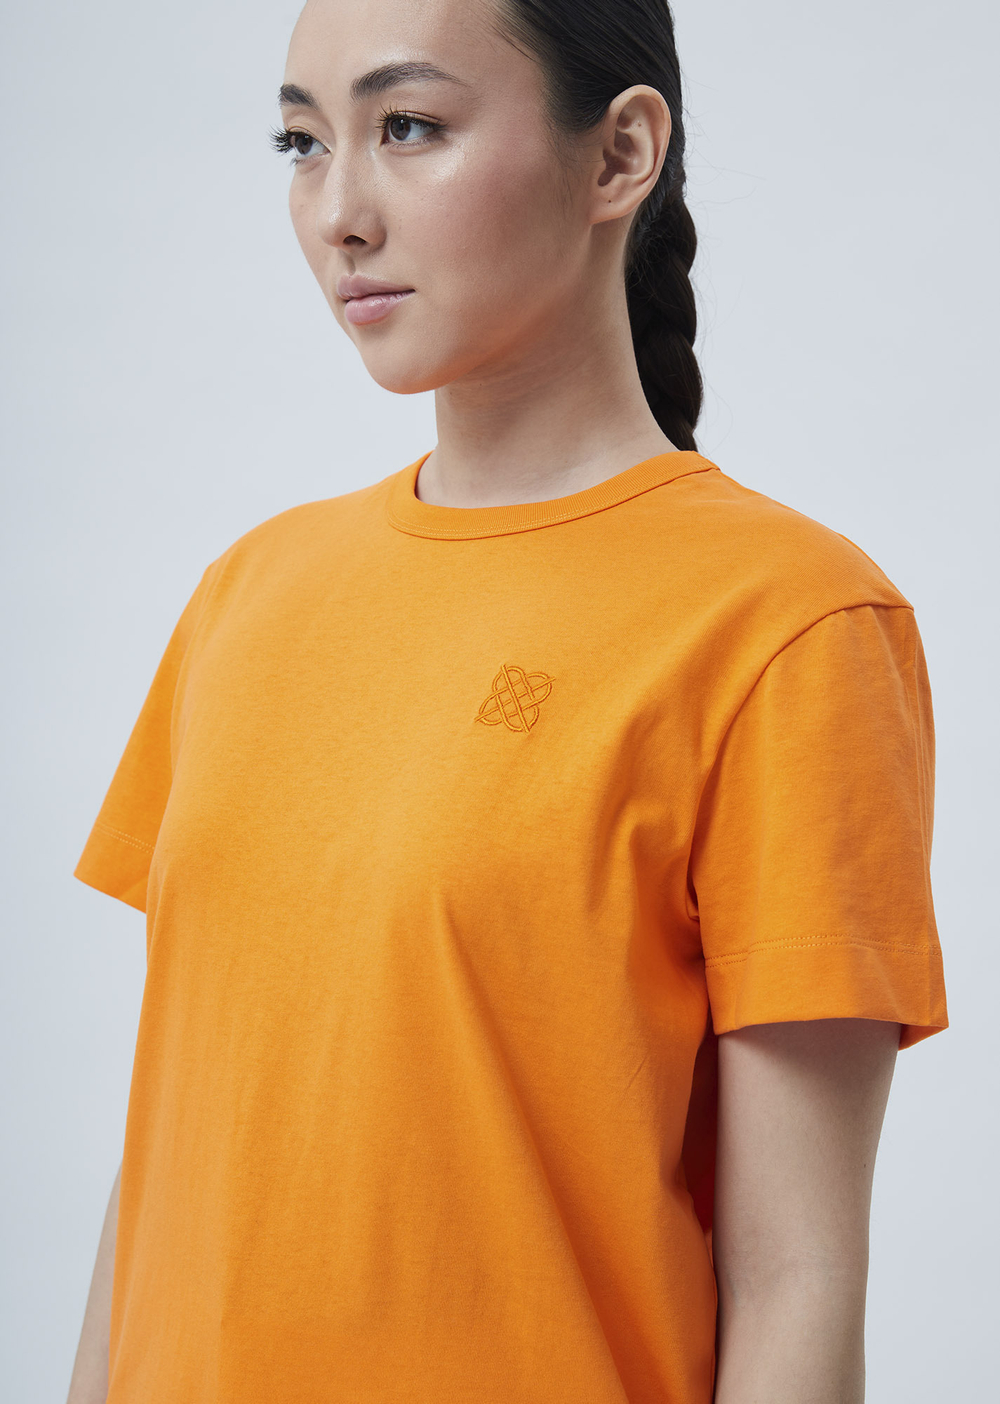 Женская футболка с вышивкой оранжевый р.XL